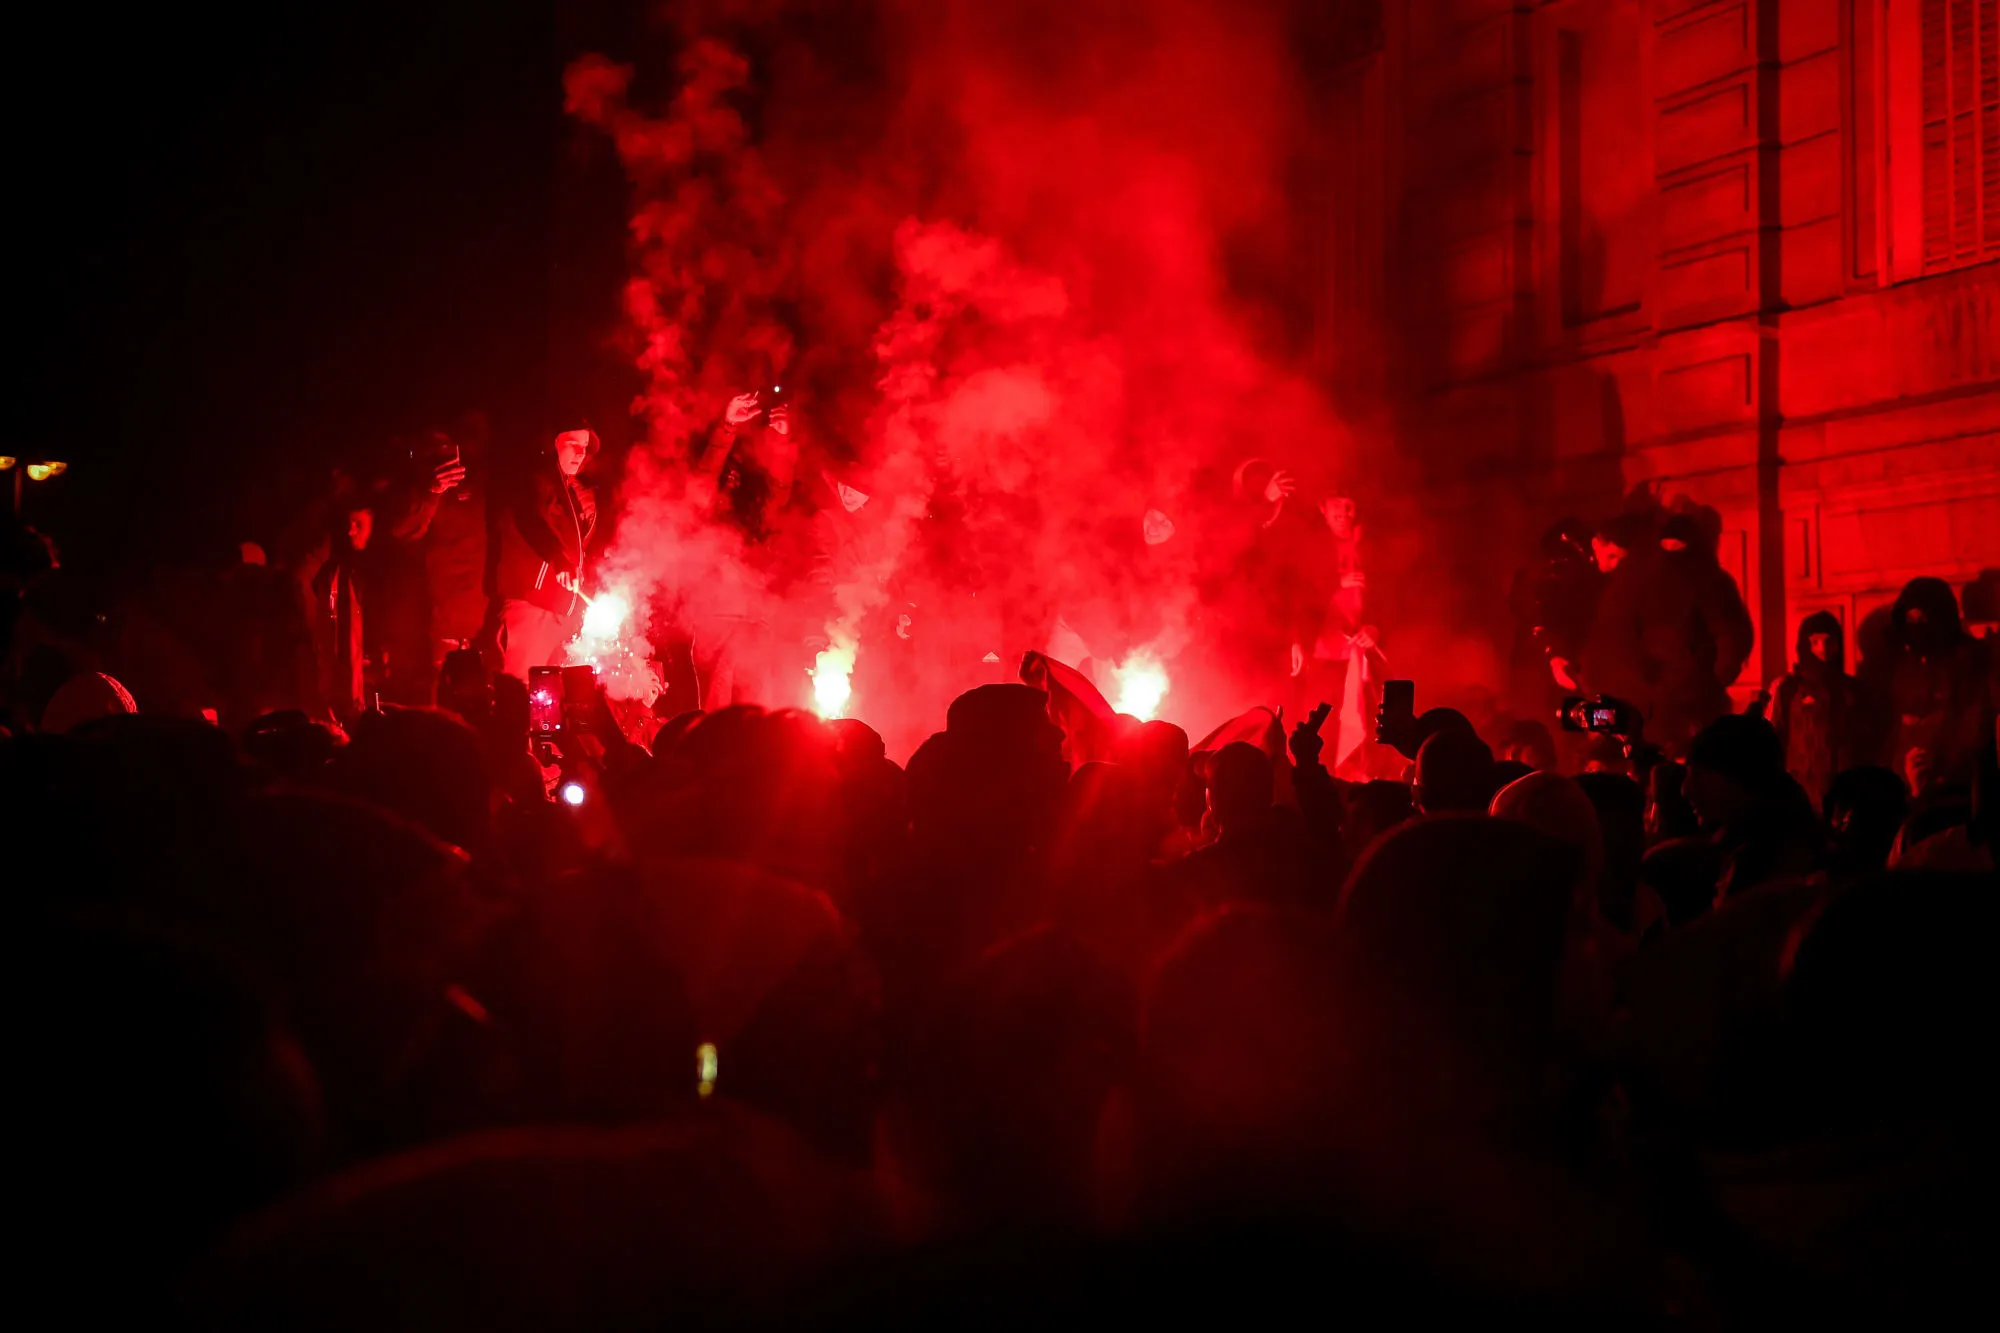 Les partisans de Zemmour célèbrent la victoire contre le Maroc à leur manière